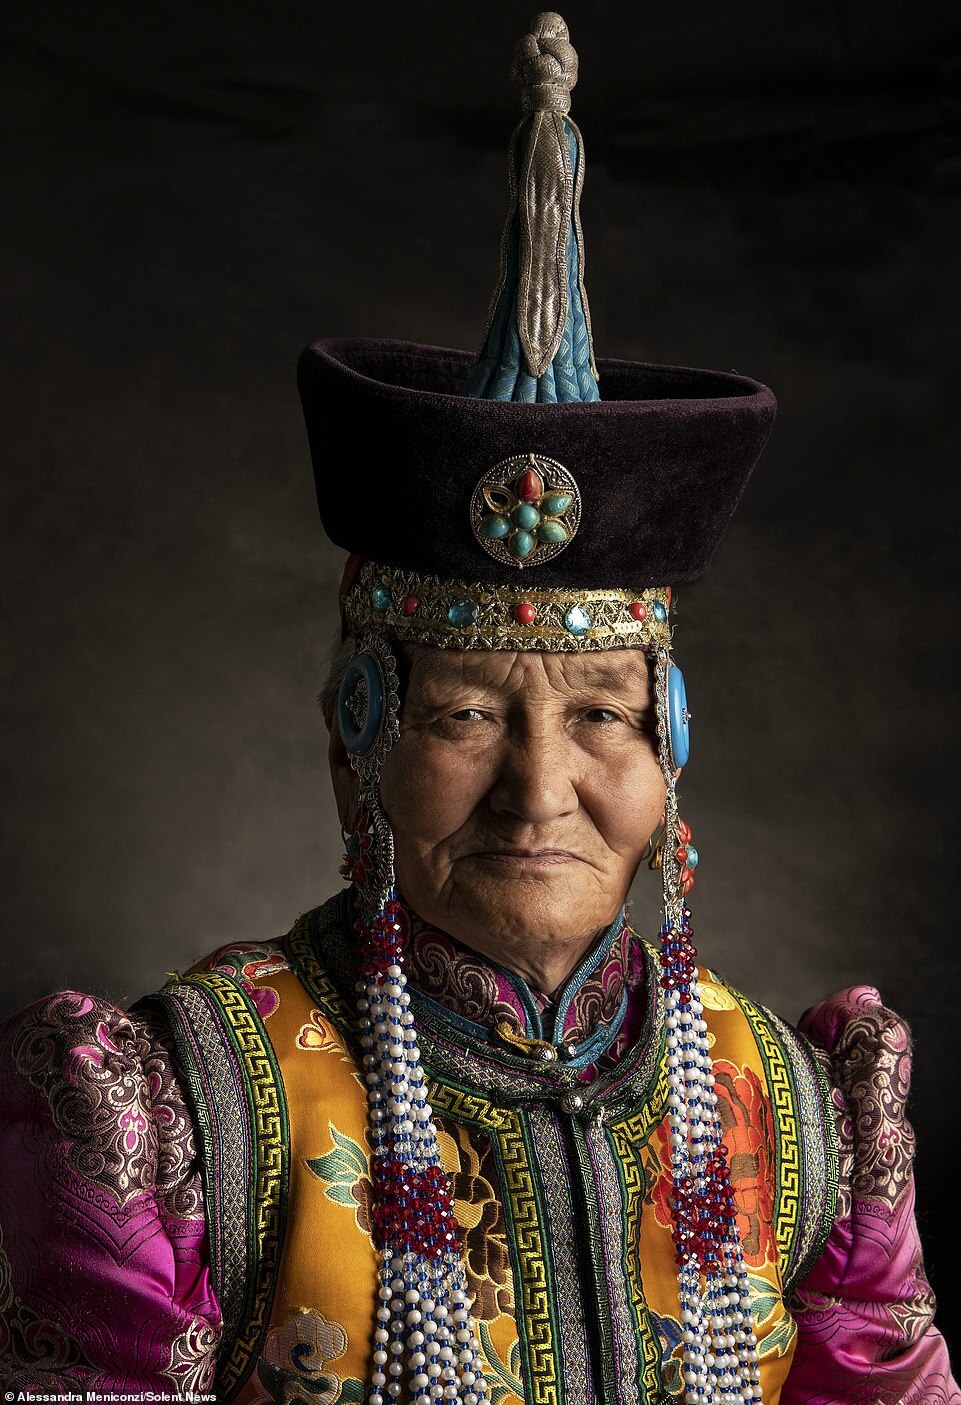 Một trong những món đồ sặc sỡ và nguyên bản nhất của trang phục Mông Cổ truyền thống là mũ. Họ có tới hàng trăm kiểu mũ với phong cách khác nhau. Mũ với người Mông Cổ không chỉ thể hiện sự giàu có và tuổi tác của người đội mà còn là đặc điểm chỉ ra họ thuộc bộ tộc nào. 